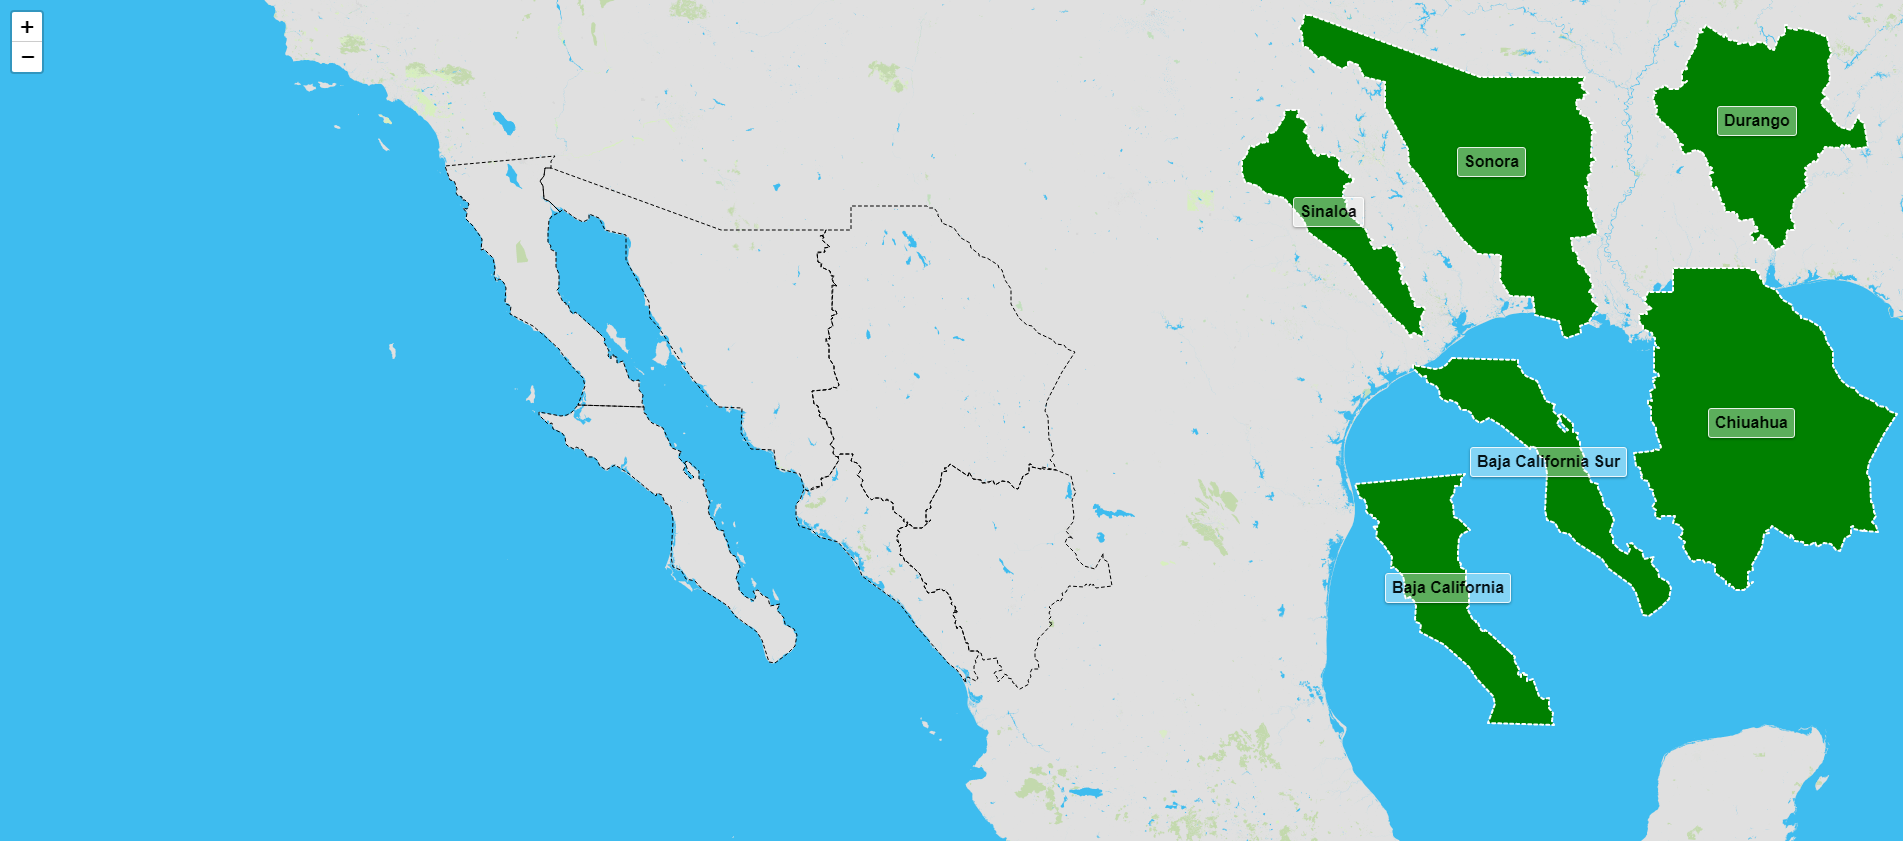 Estados de la región noroeste de México